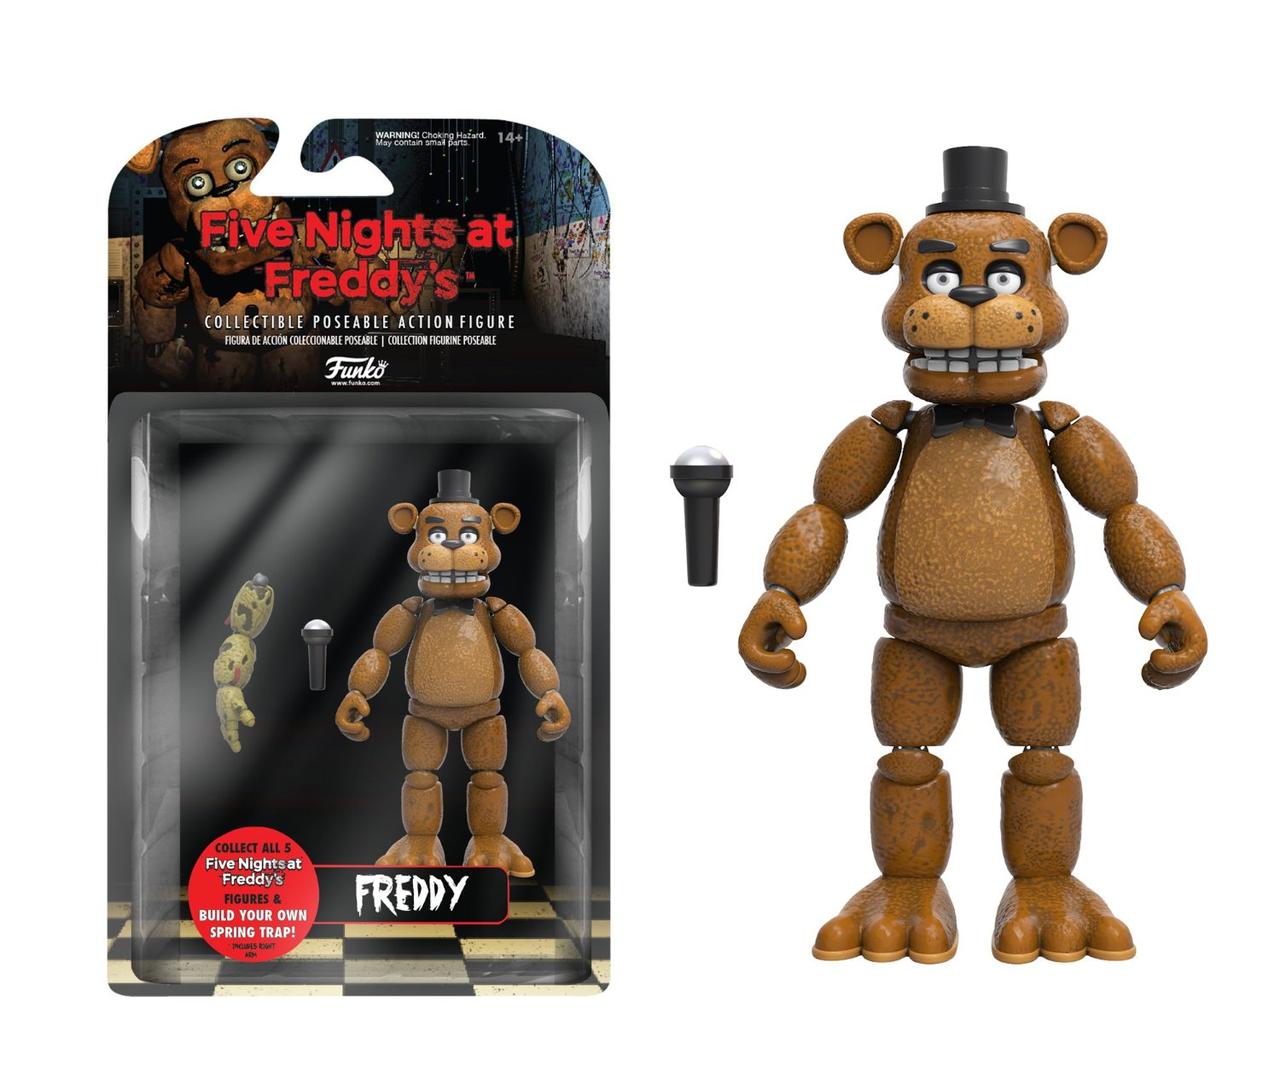 Іграшки 5 ночей із Фредді, Фредді/Funko Five Nights at Freddy's, Freddy